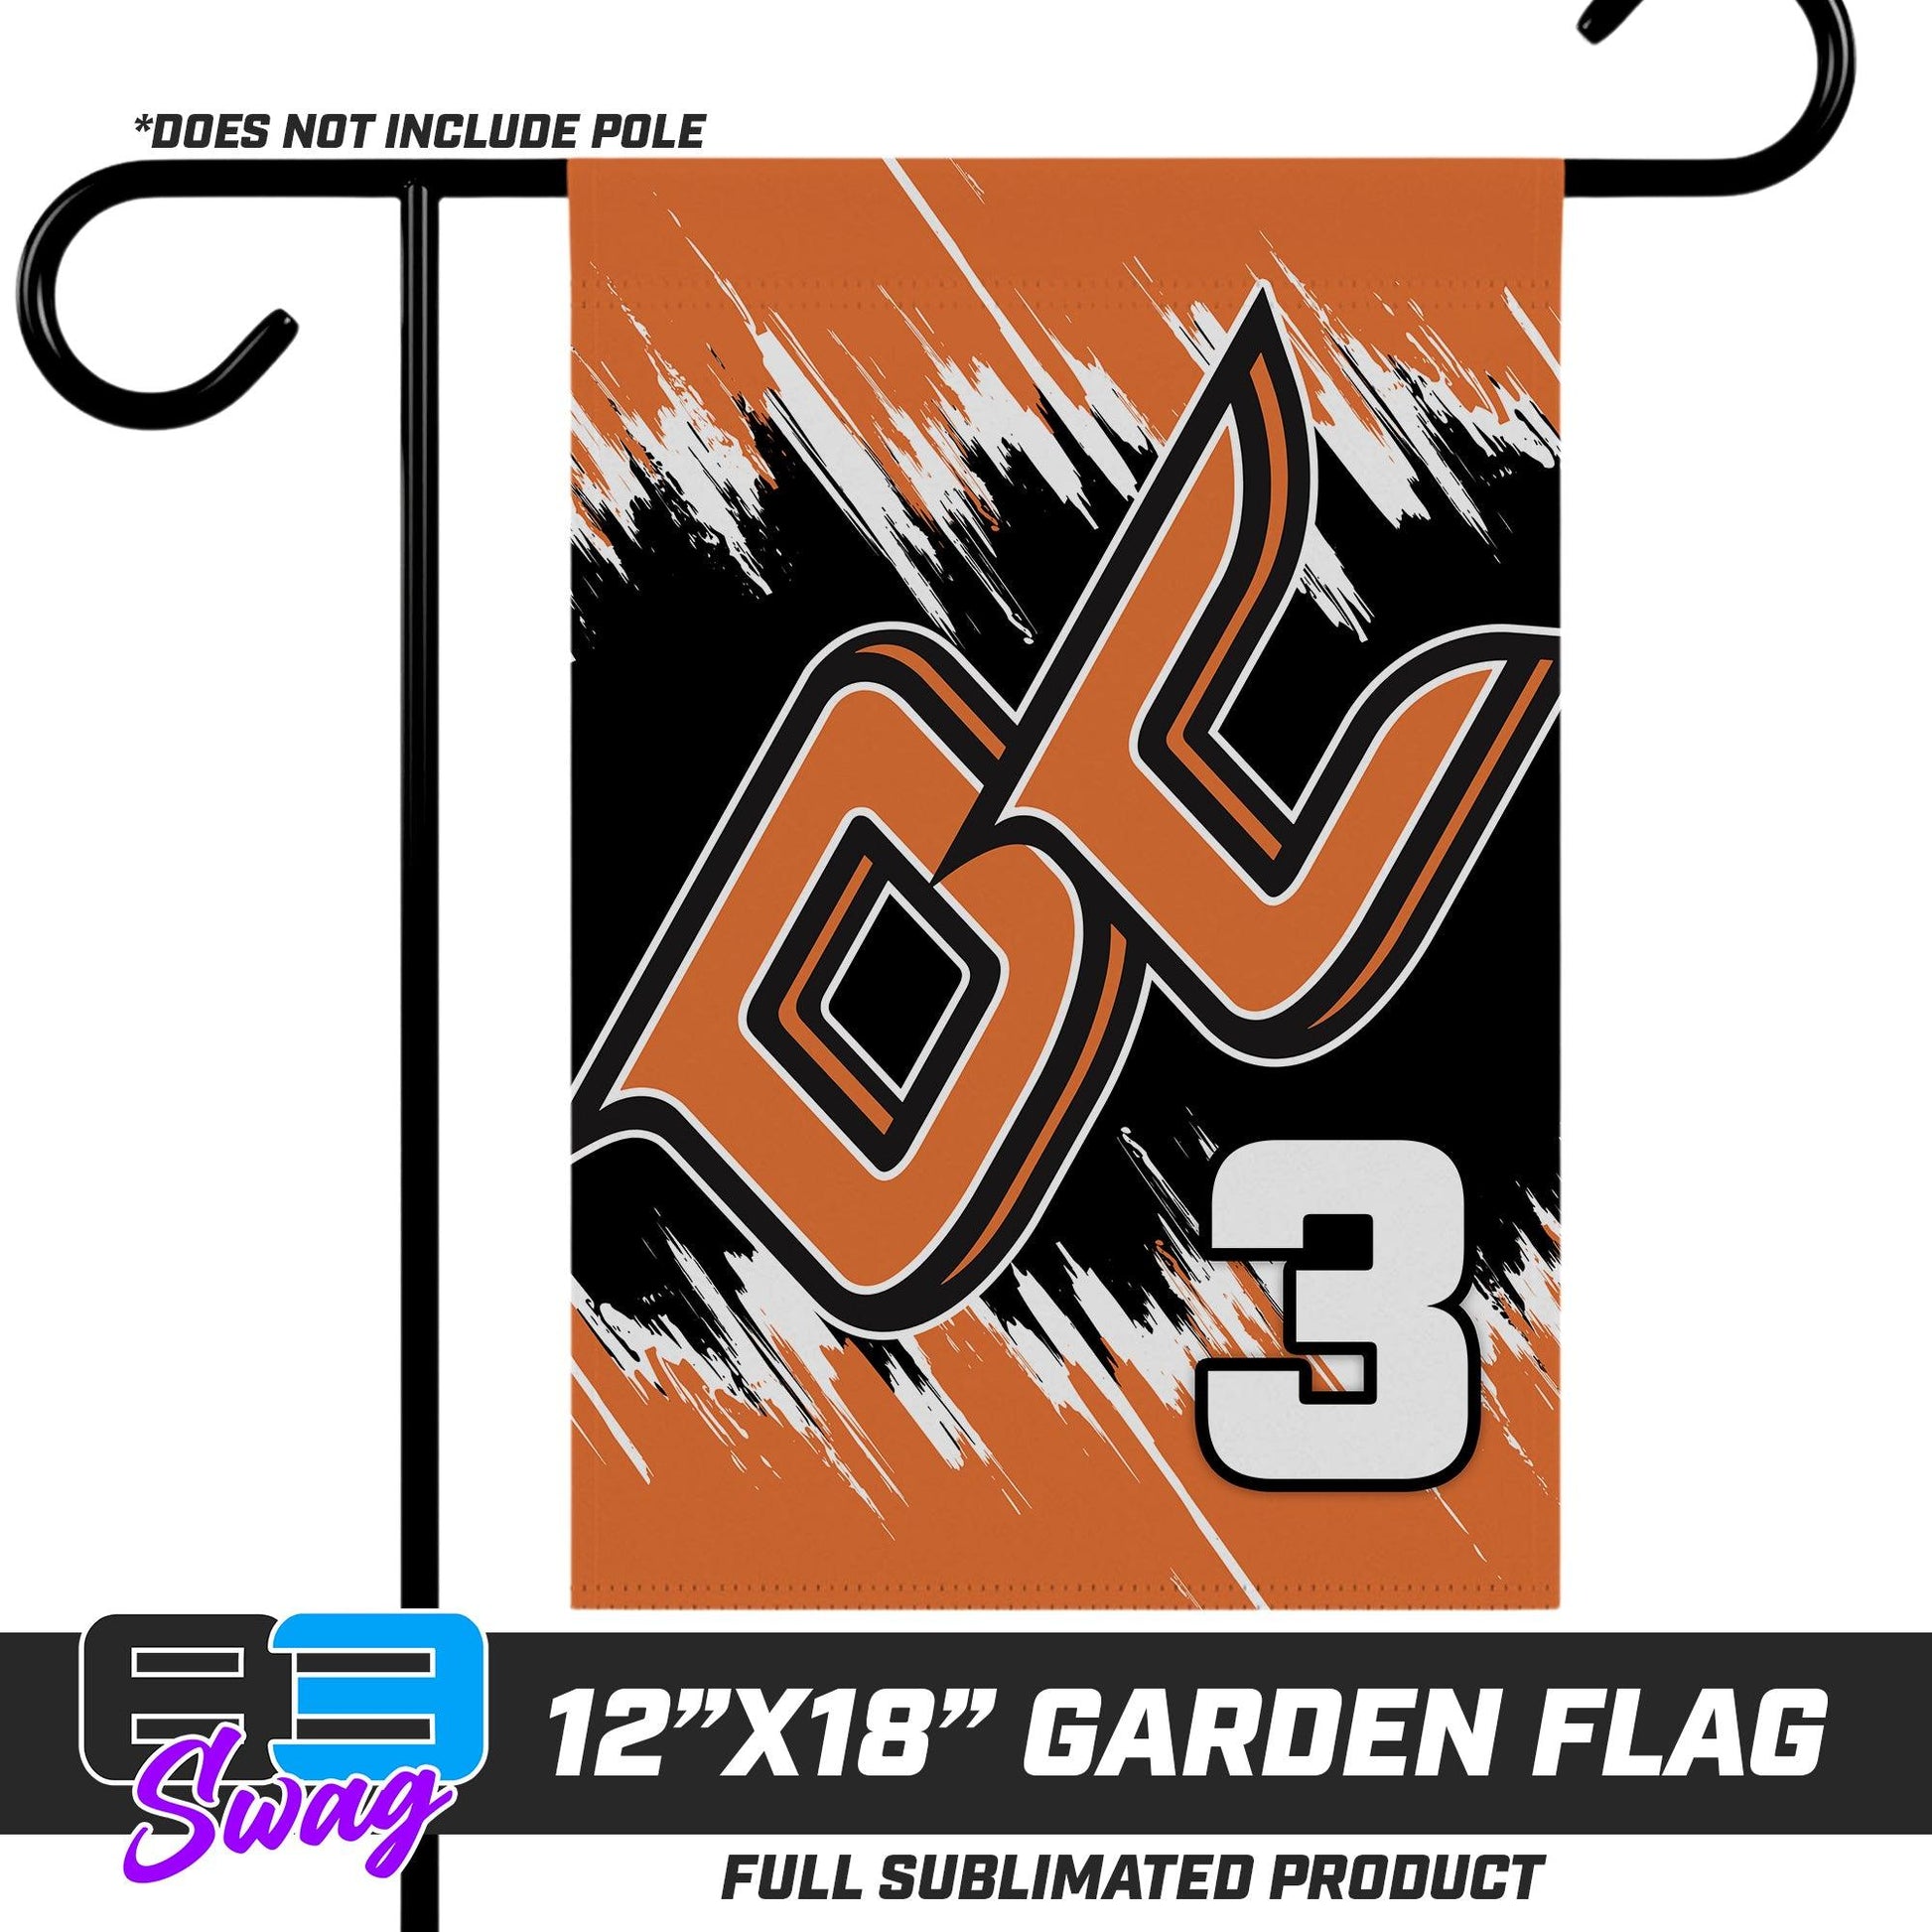 12"x18" Garden Flag - Orange County Hockey Club - 83Swag